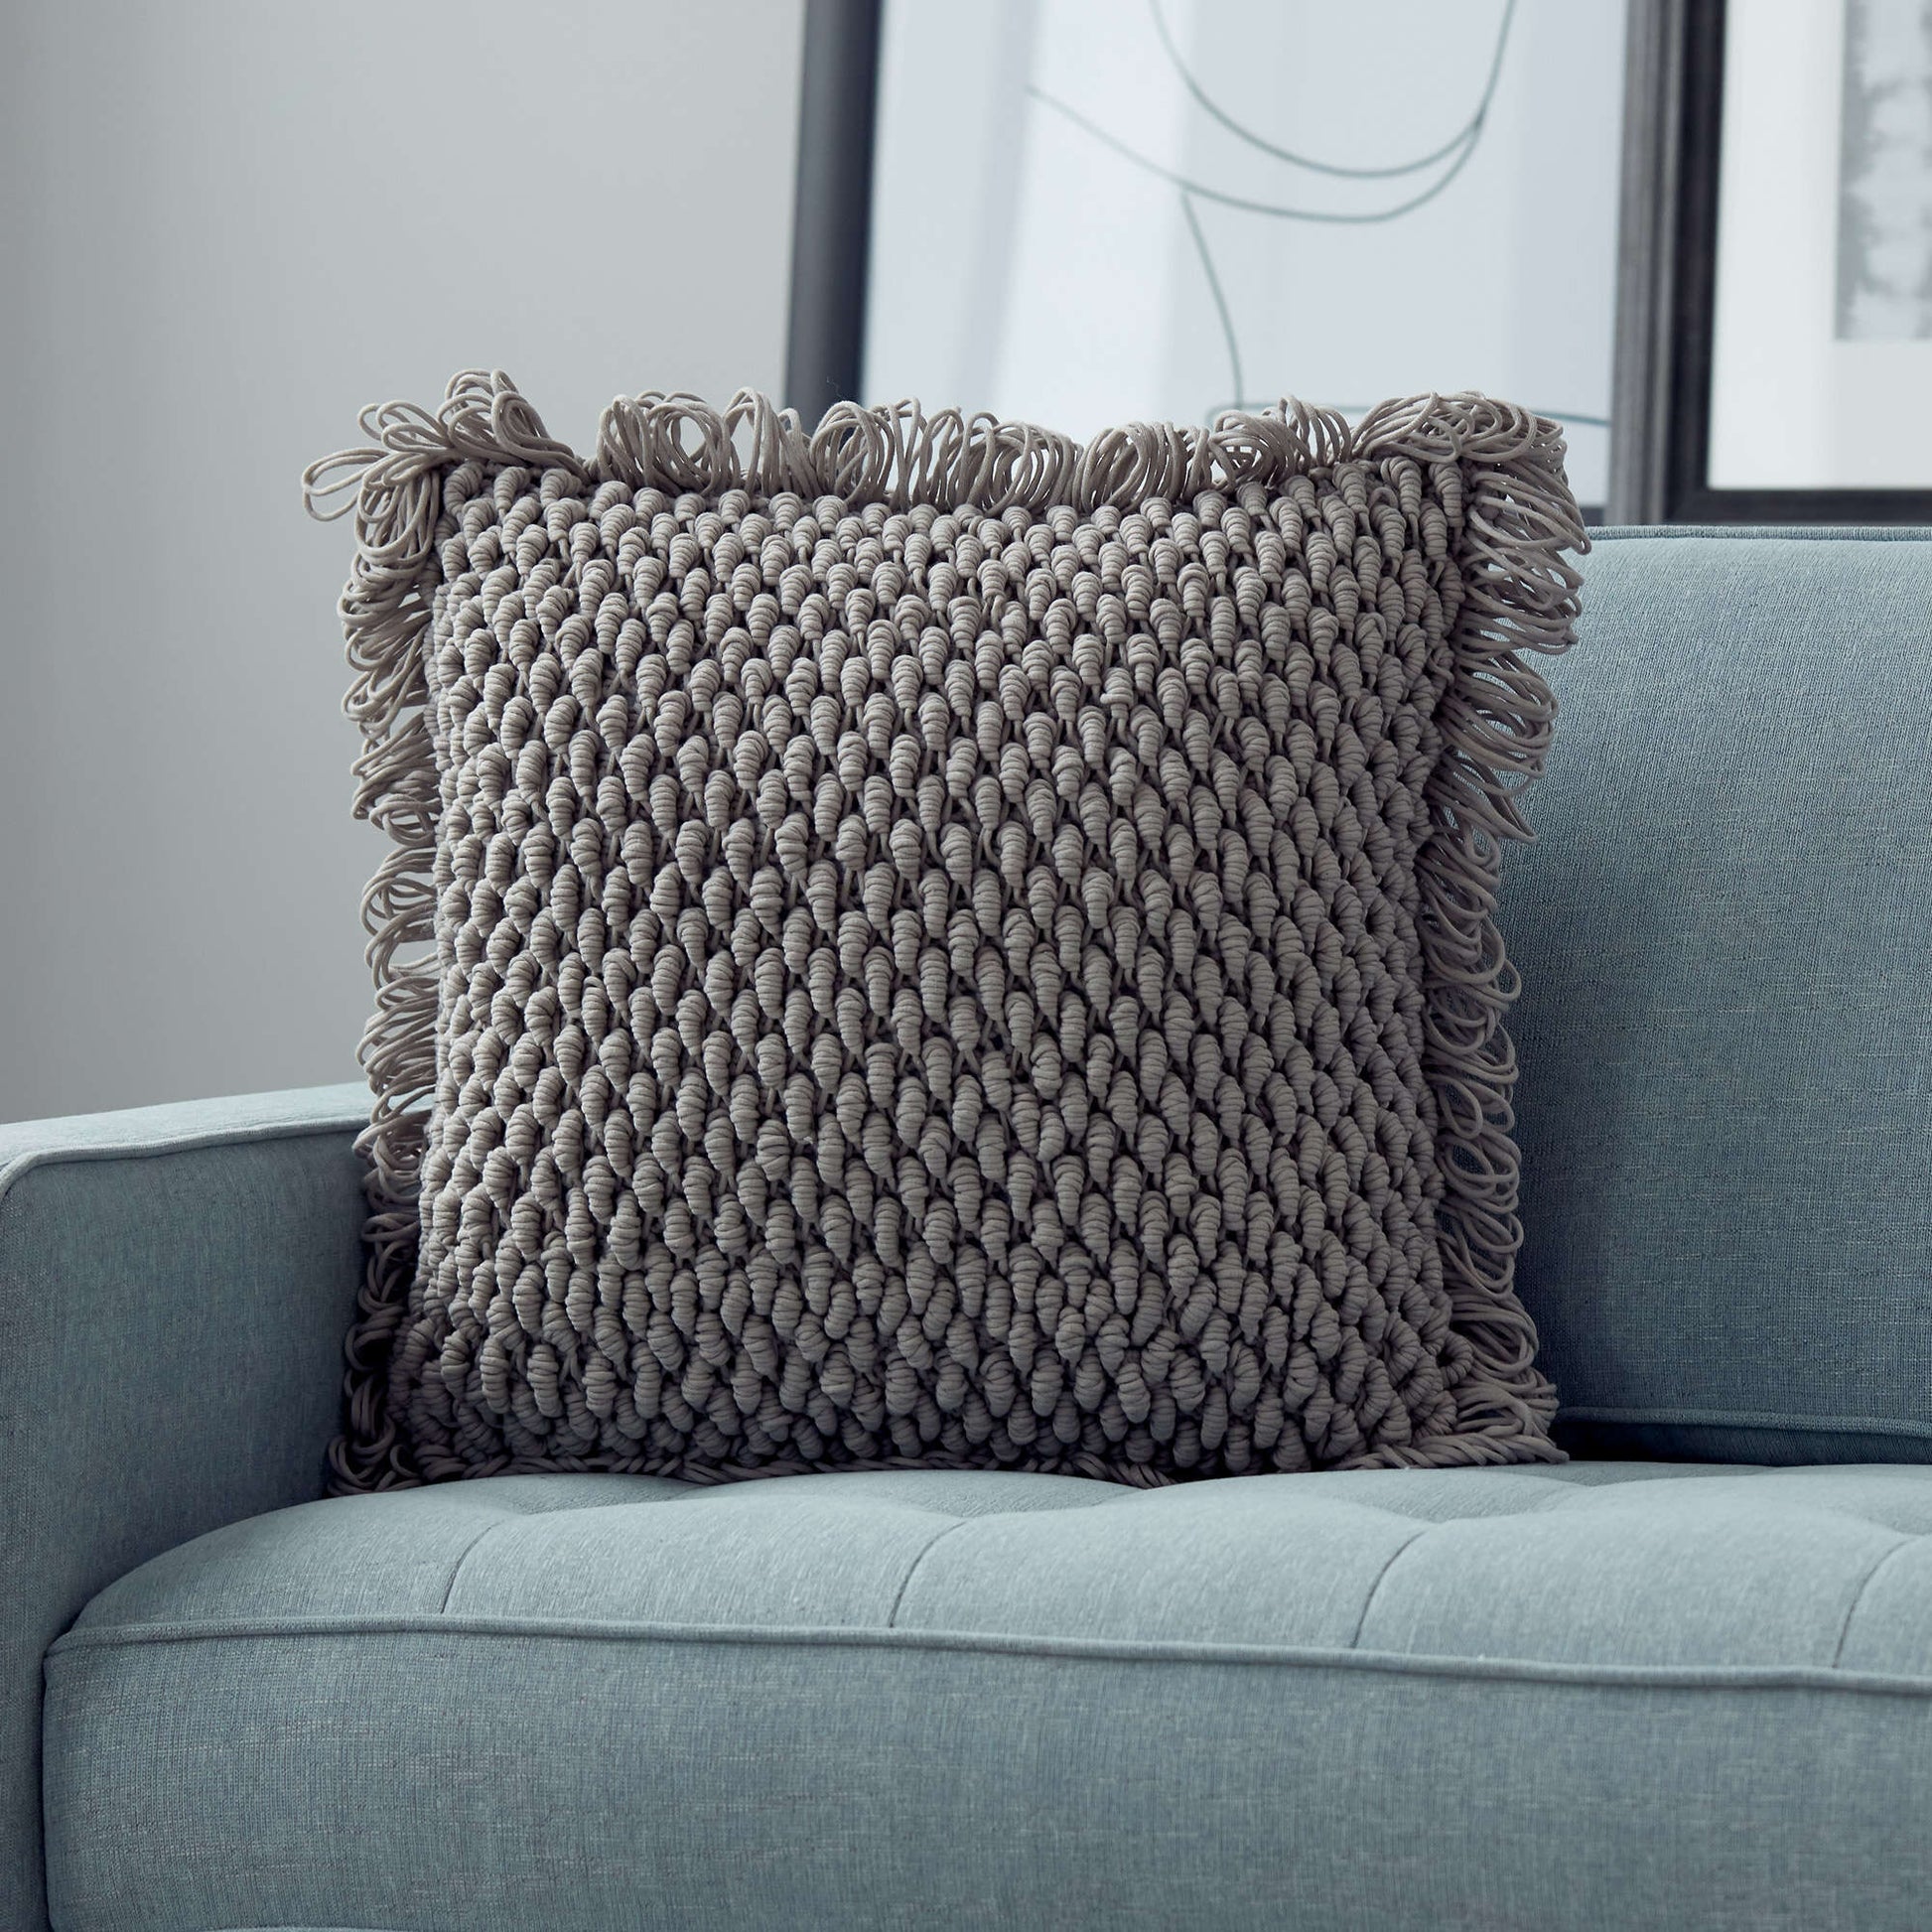 Free Bernat Bullion Loop Crochet Pillow Pattern